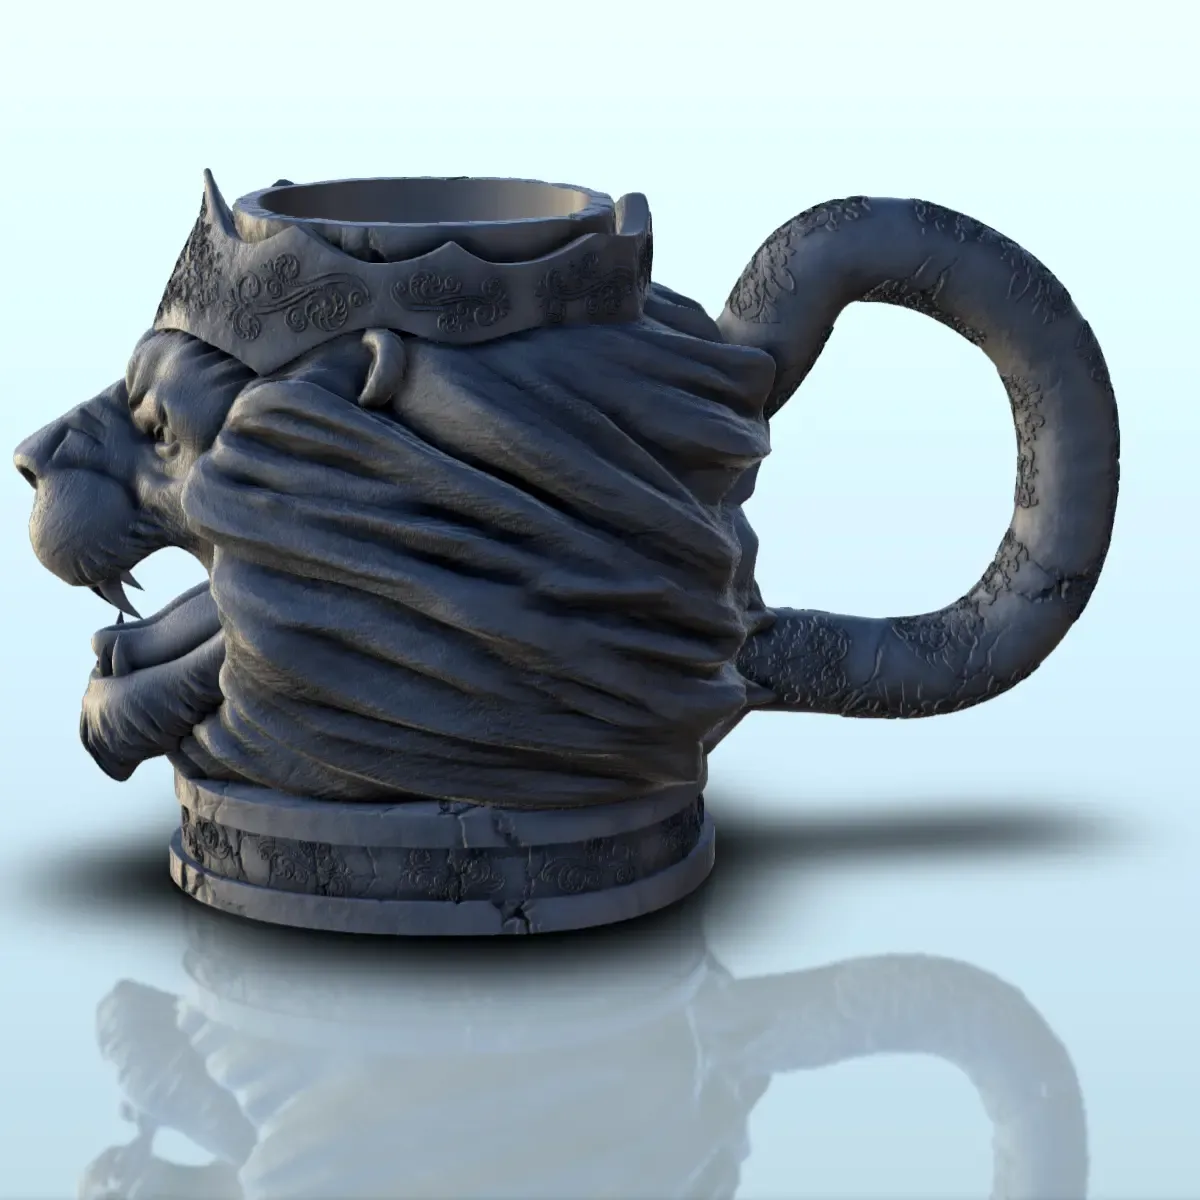 King lion dice mug (18) - beer can holder